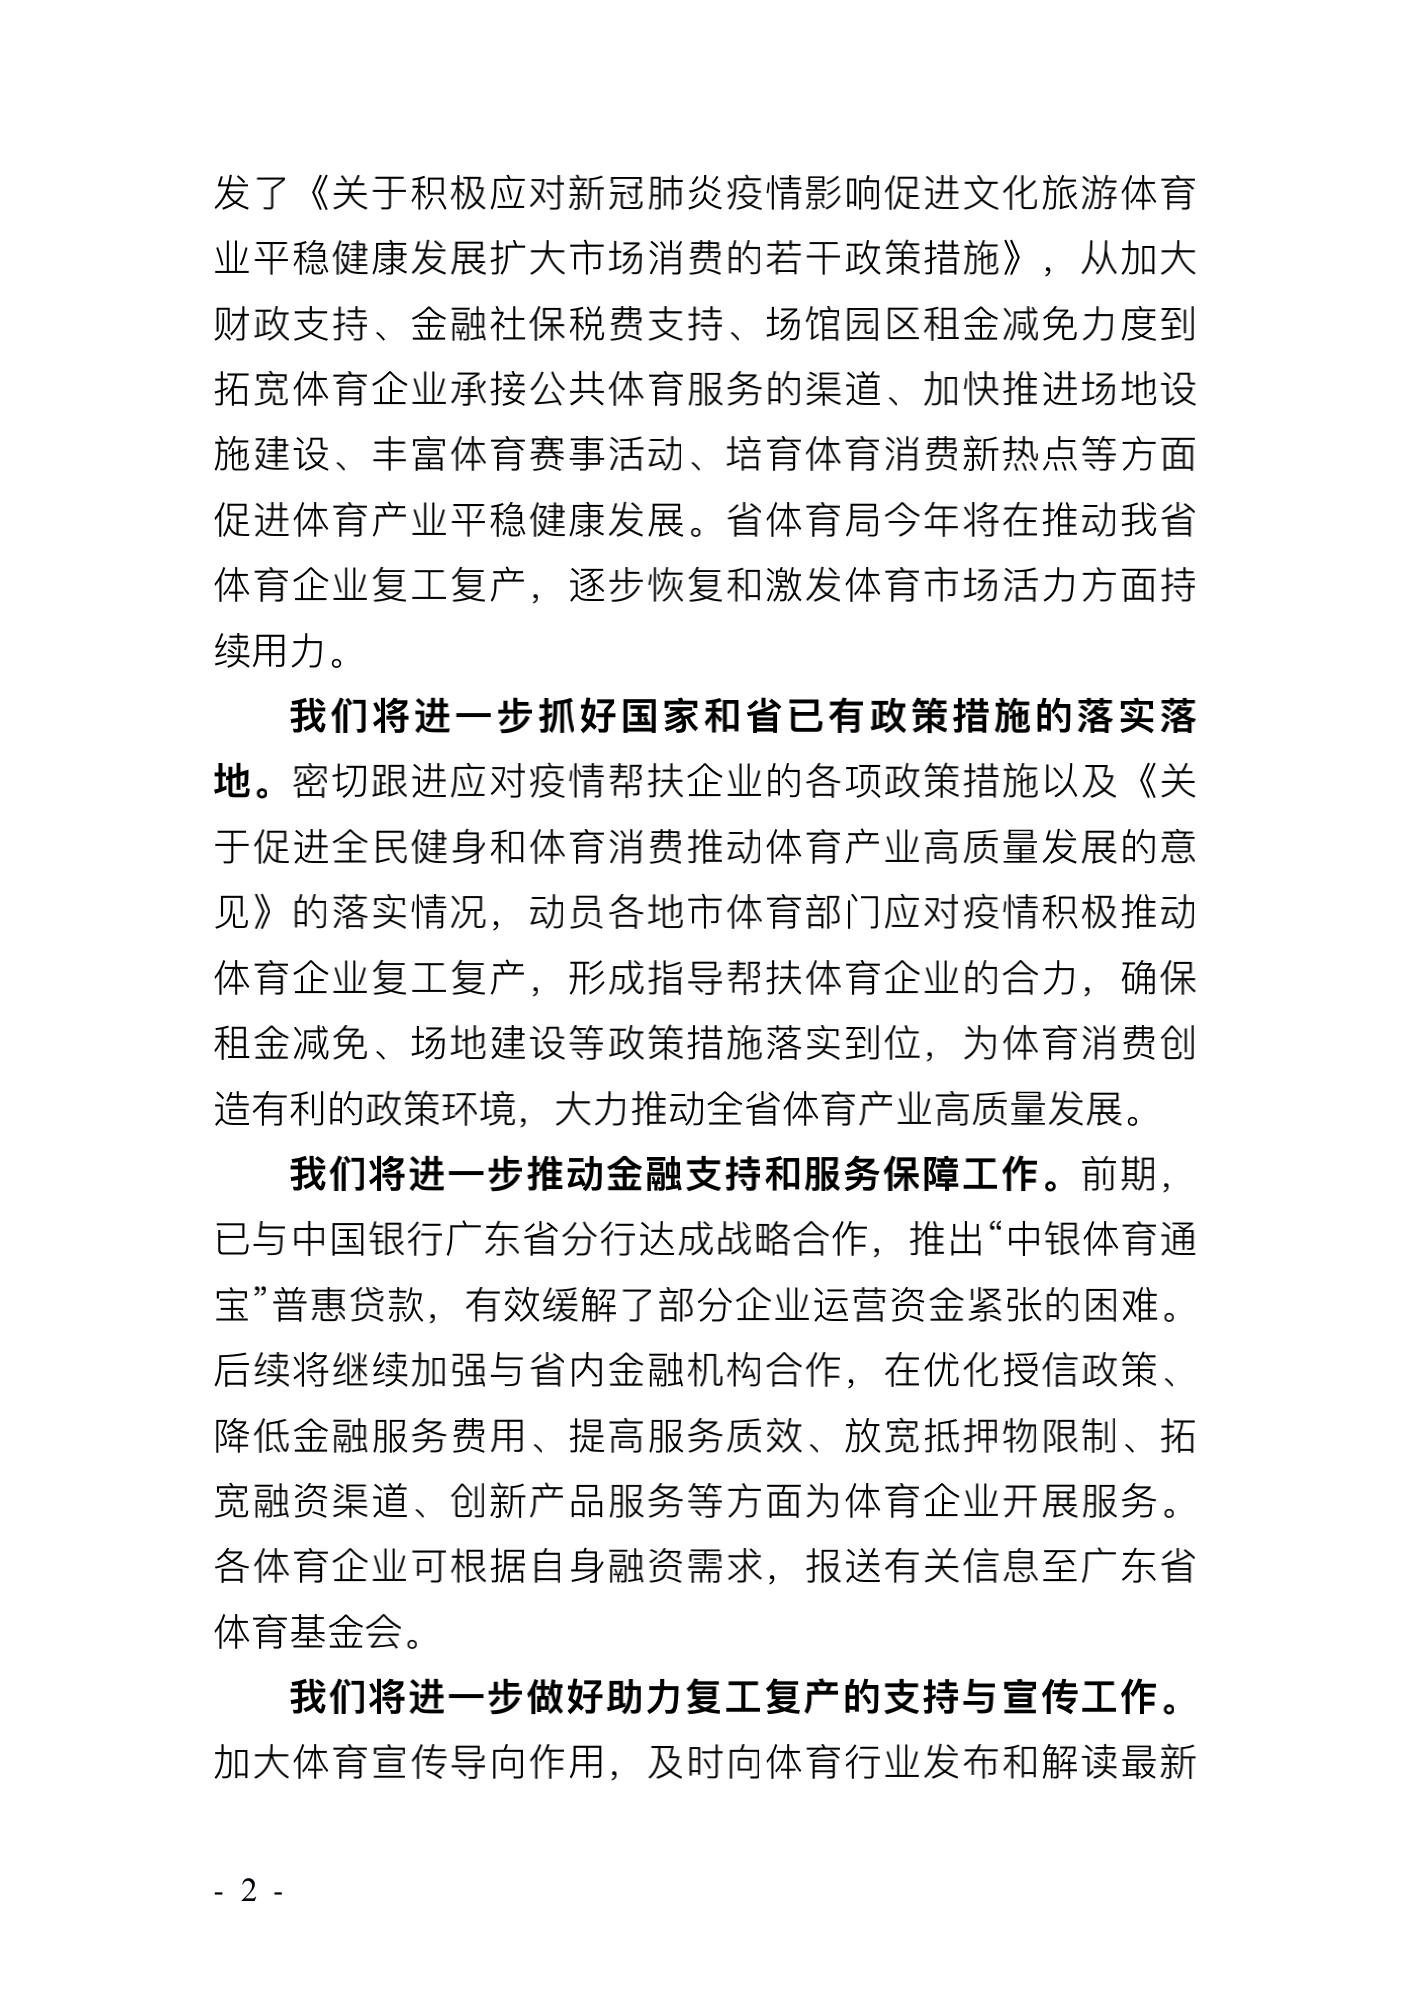 广东省体育局致广大体育企业的公开信_01.png